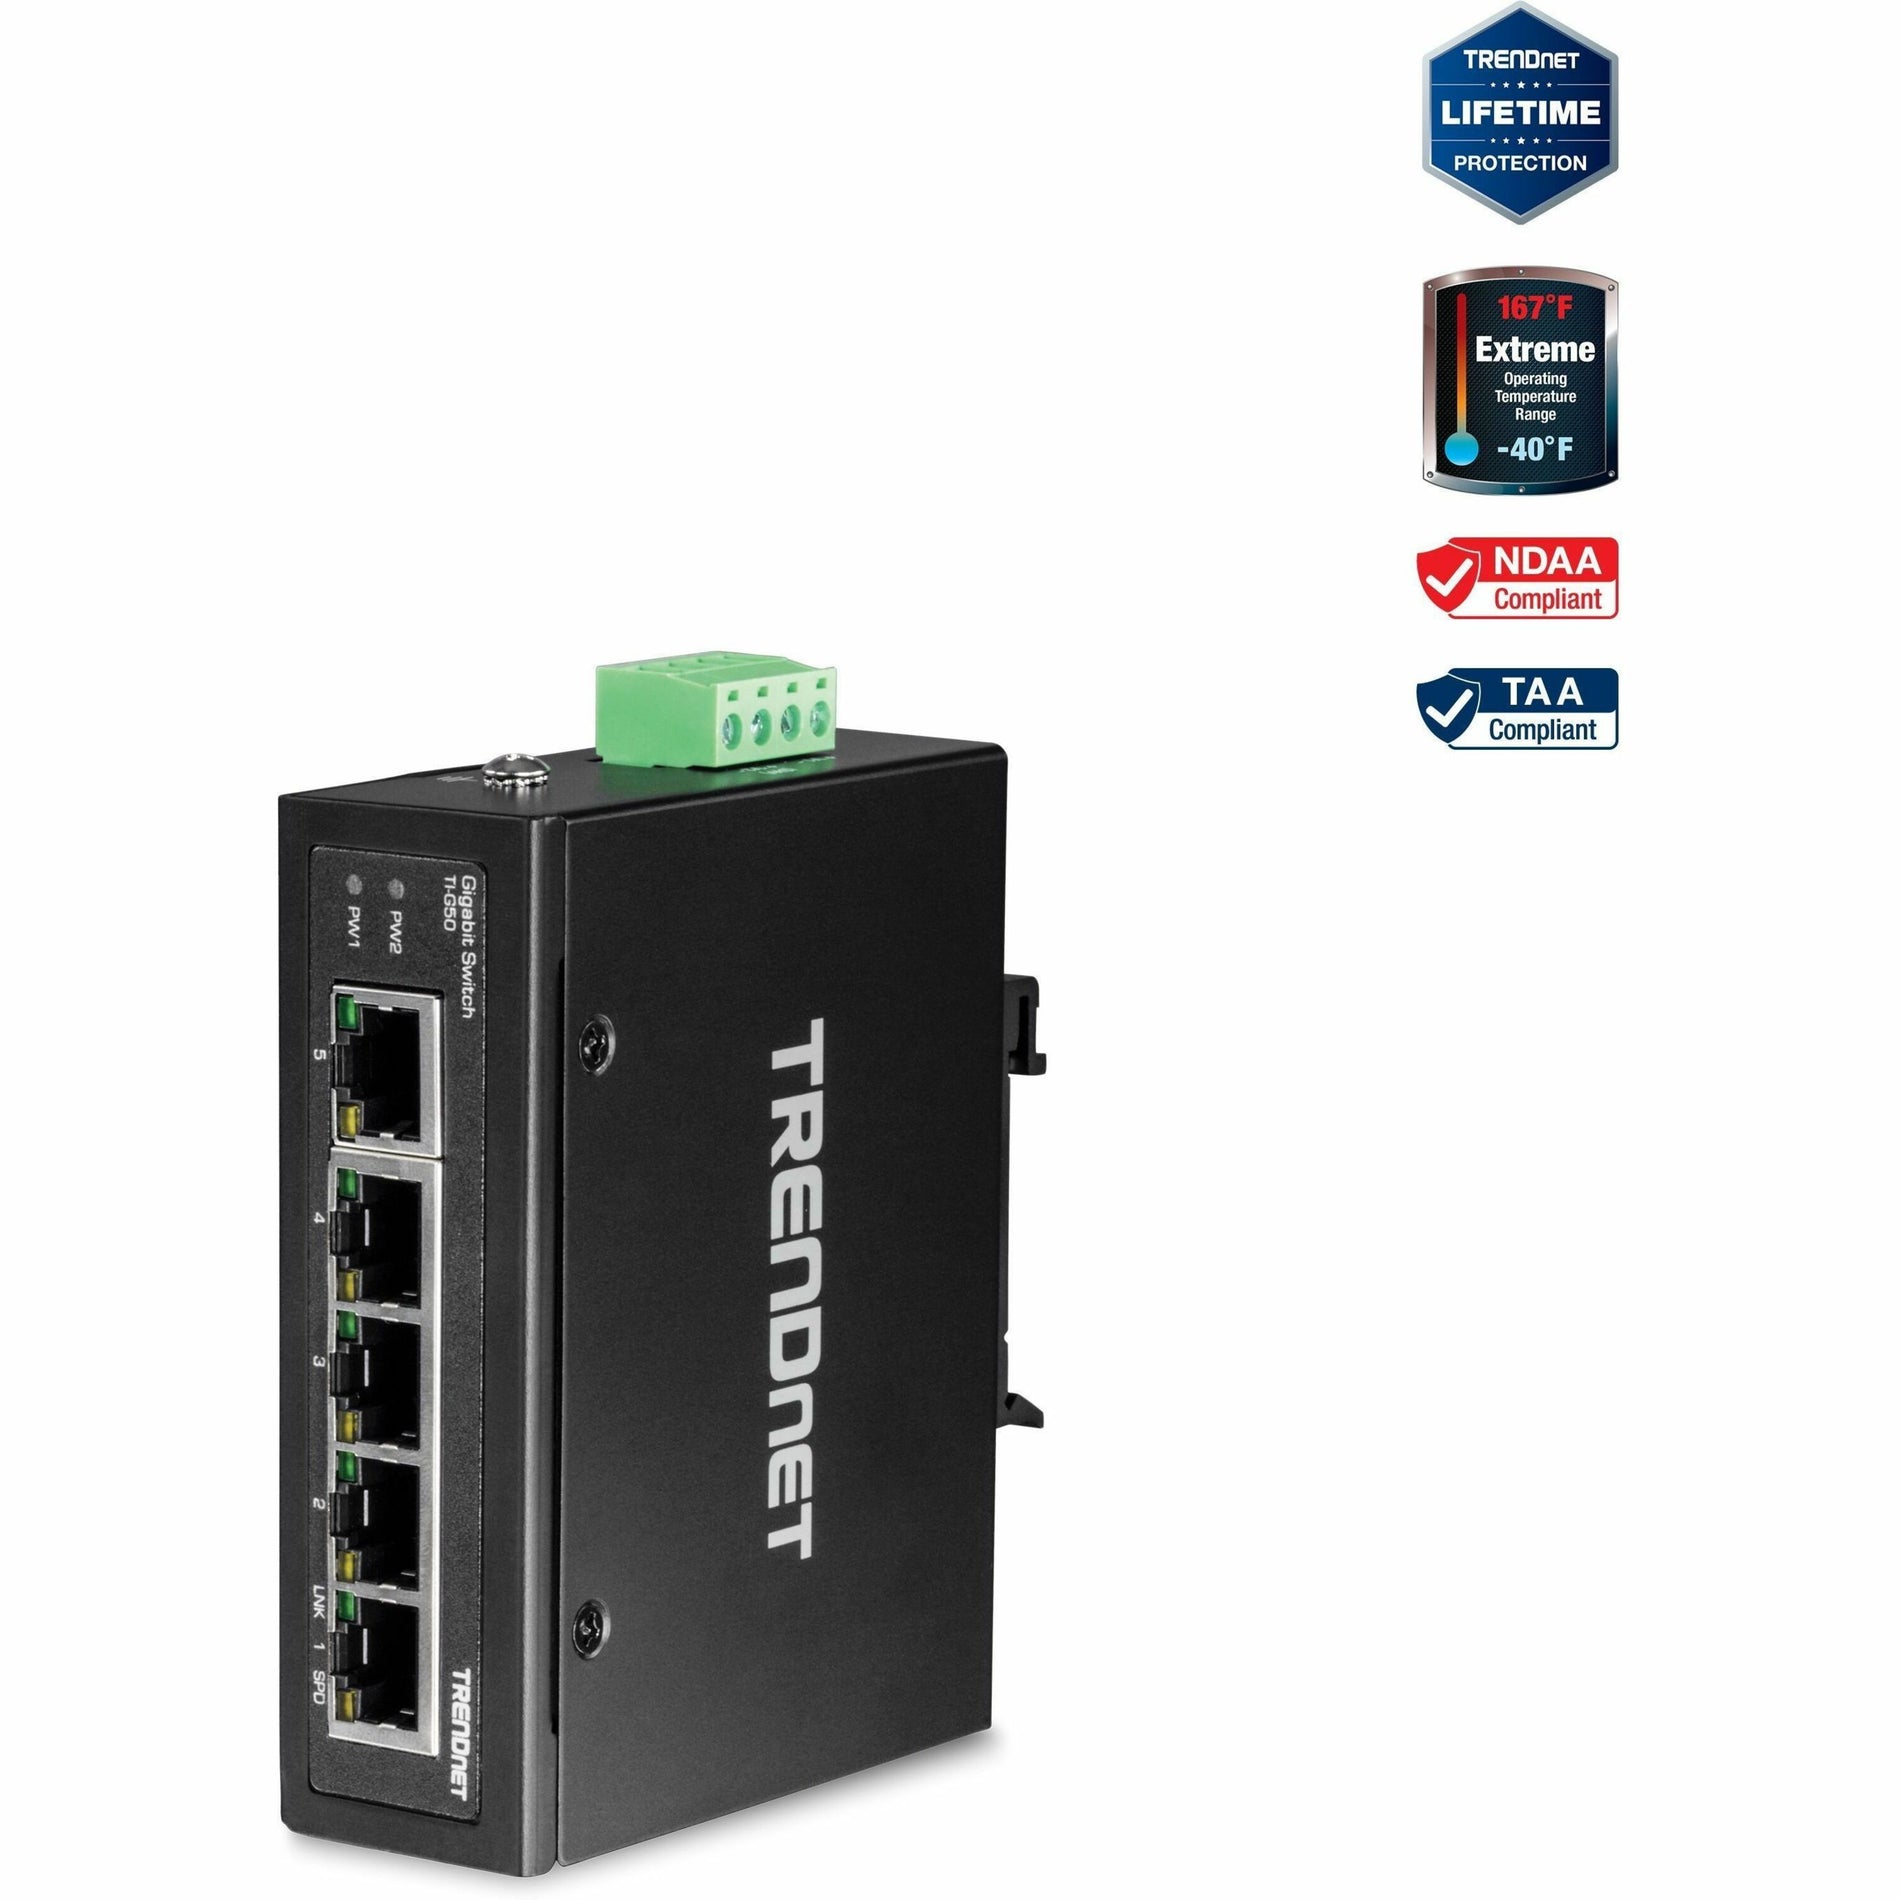 TRENDnet TI-G50 5 puertos endurecidos Industrial Gigabit Switch 10 Gbps Capacidad de Conmutación Clasificación IP30 Network Switch (-40 a 167 ?F) DIN-Rail & Montajes en Pared Incluidos Protección de por Vida Negro